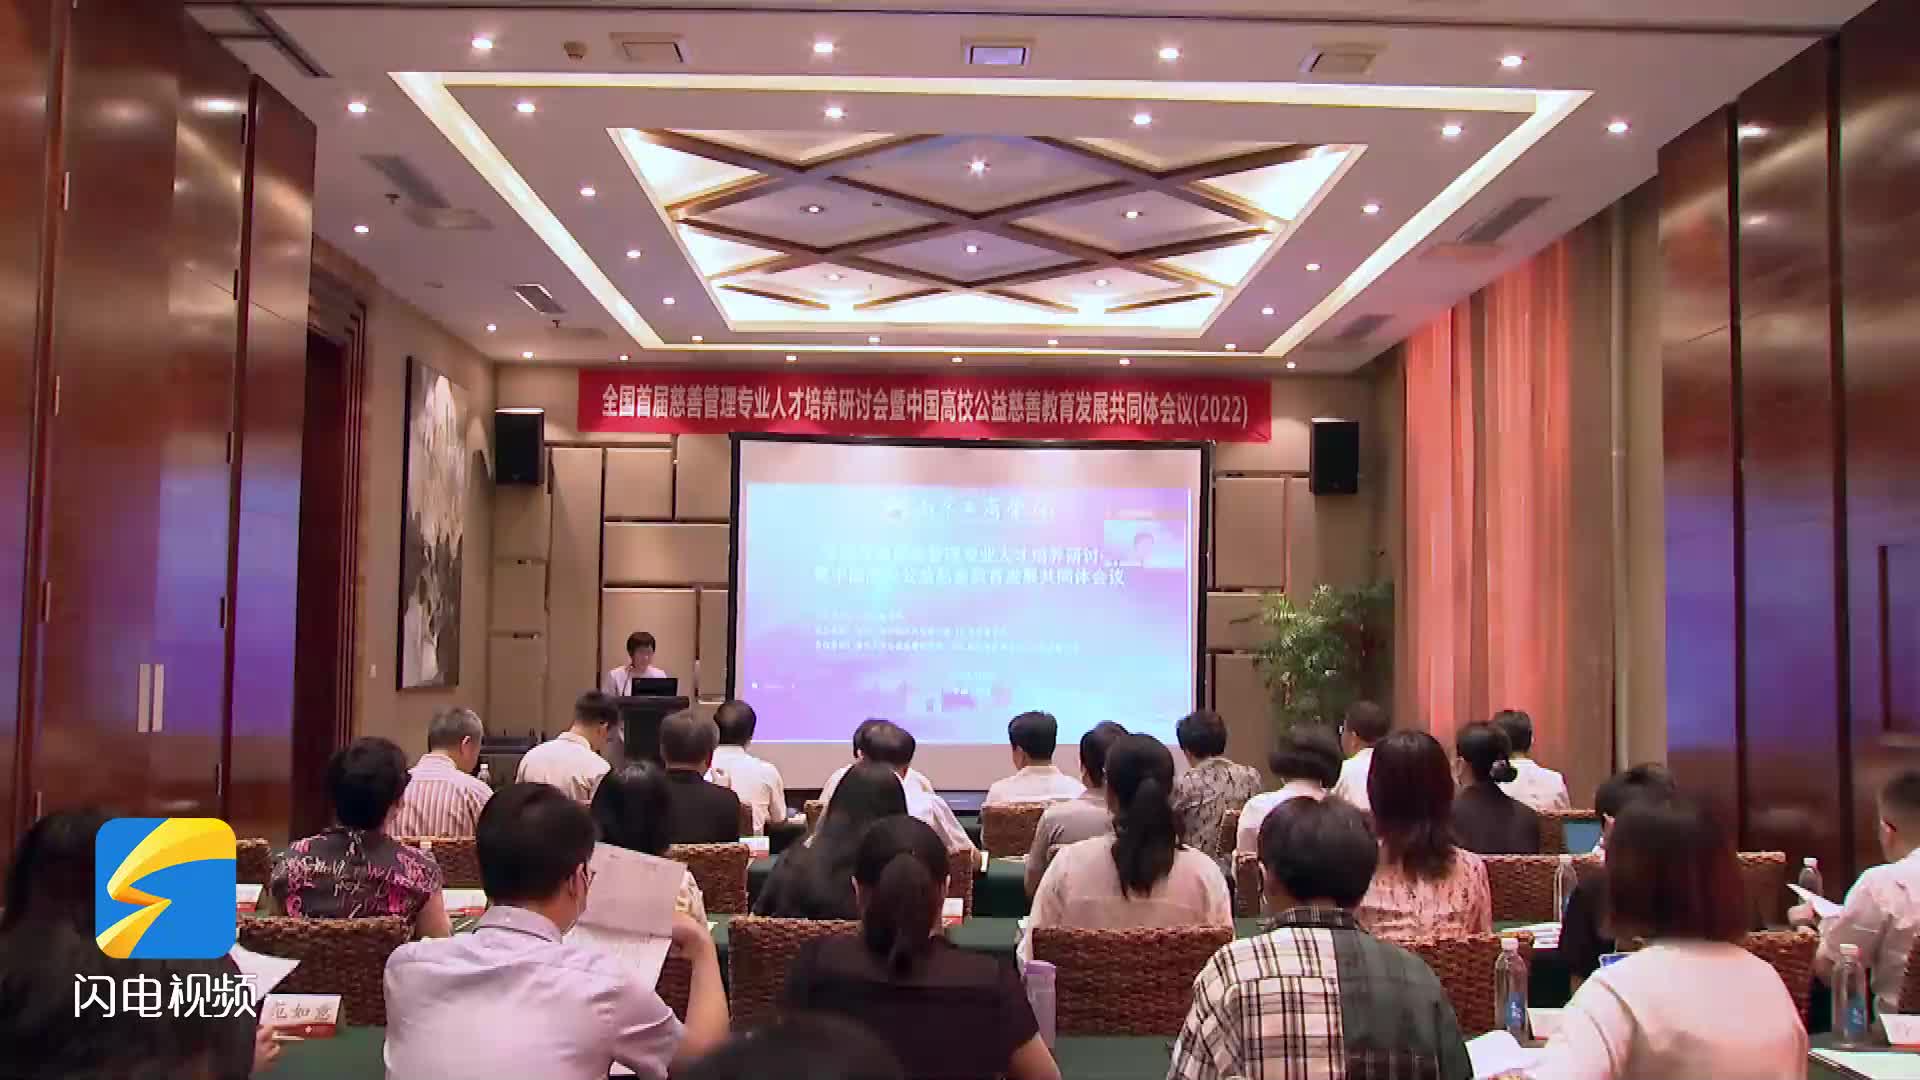 中国高校公益慈善教育发展共同体在烟台成立